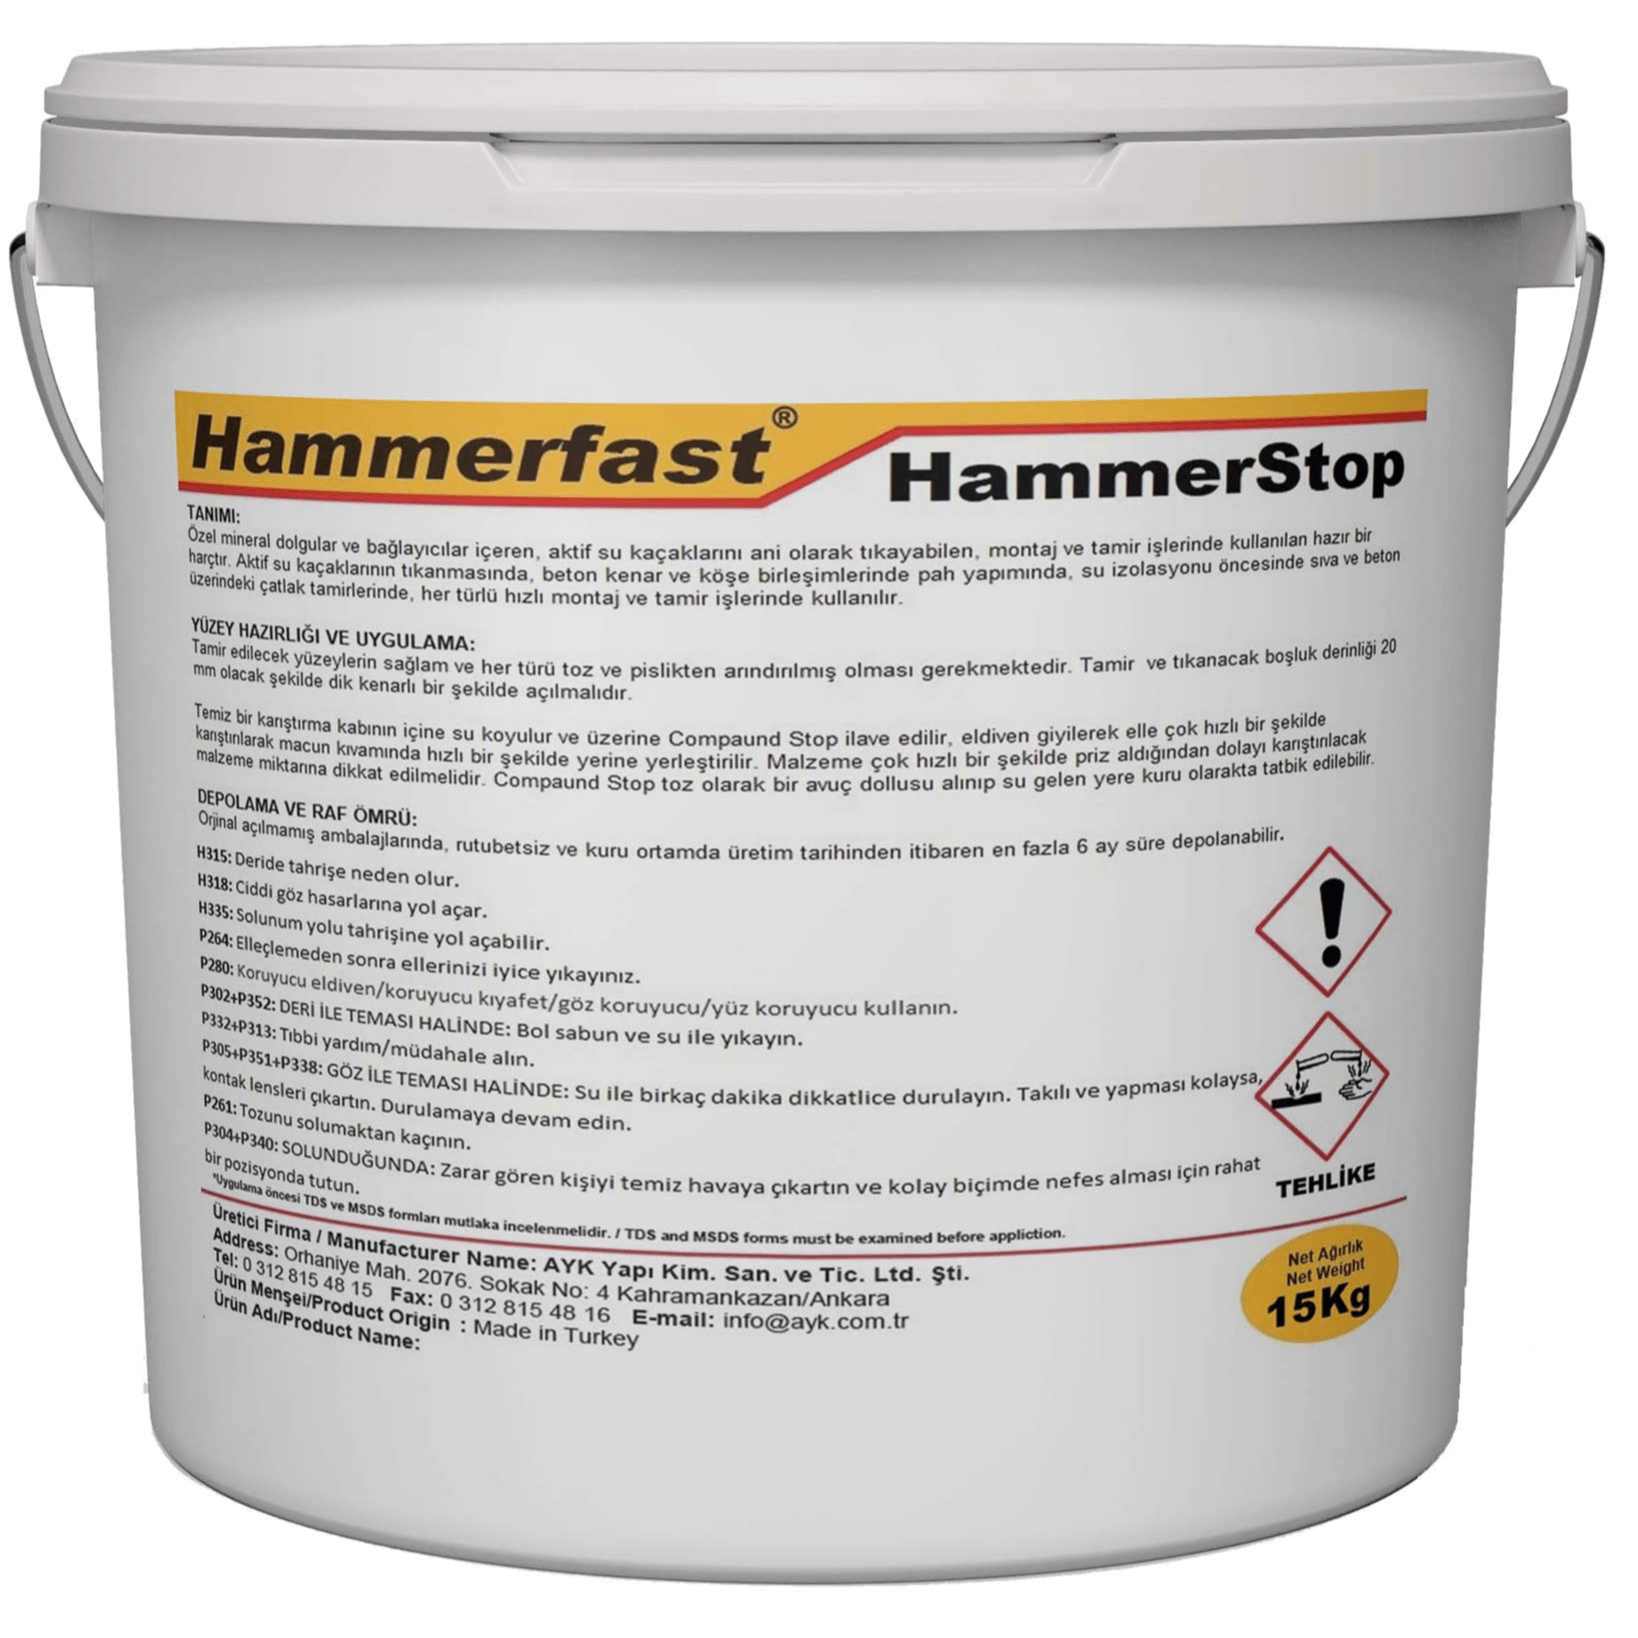 Hammerstop Plus